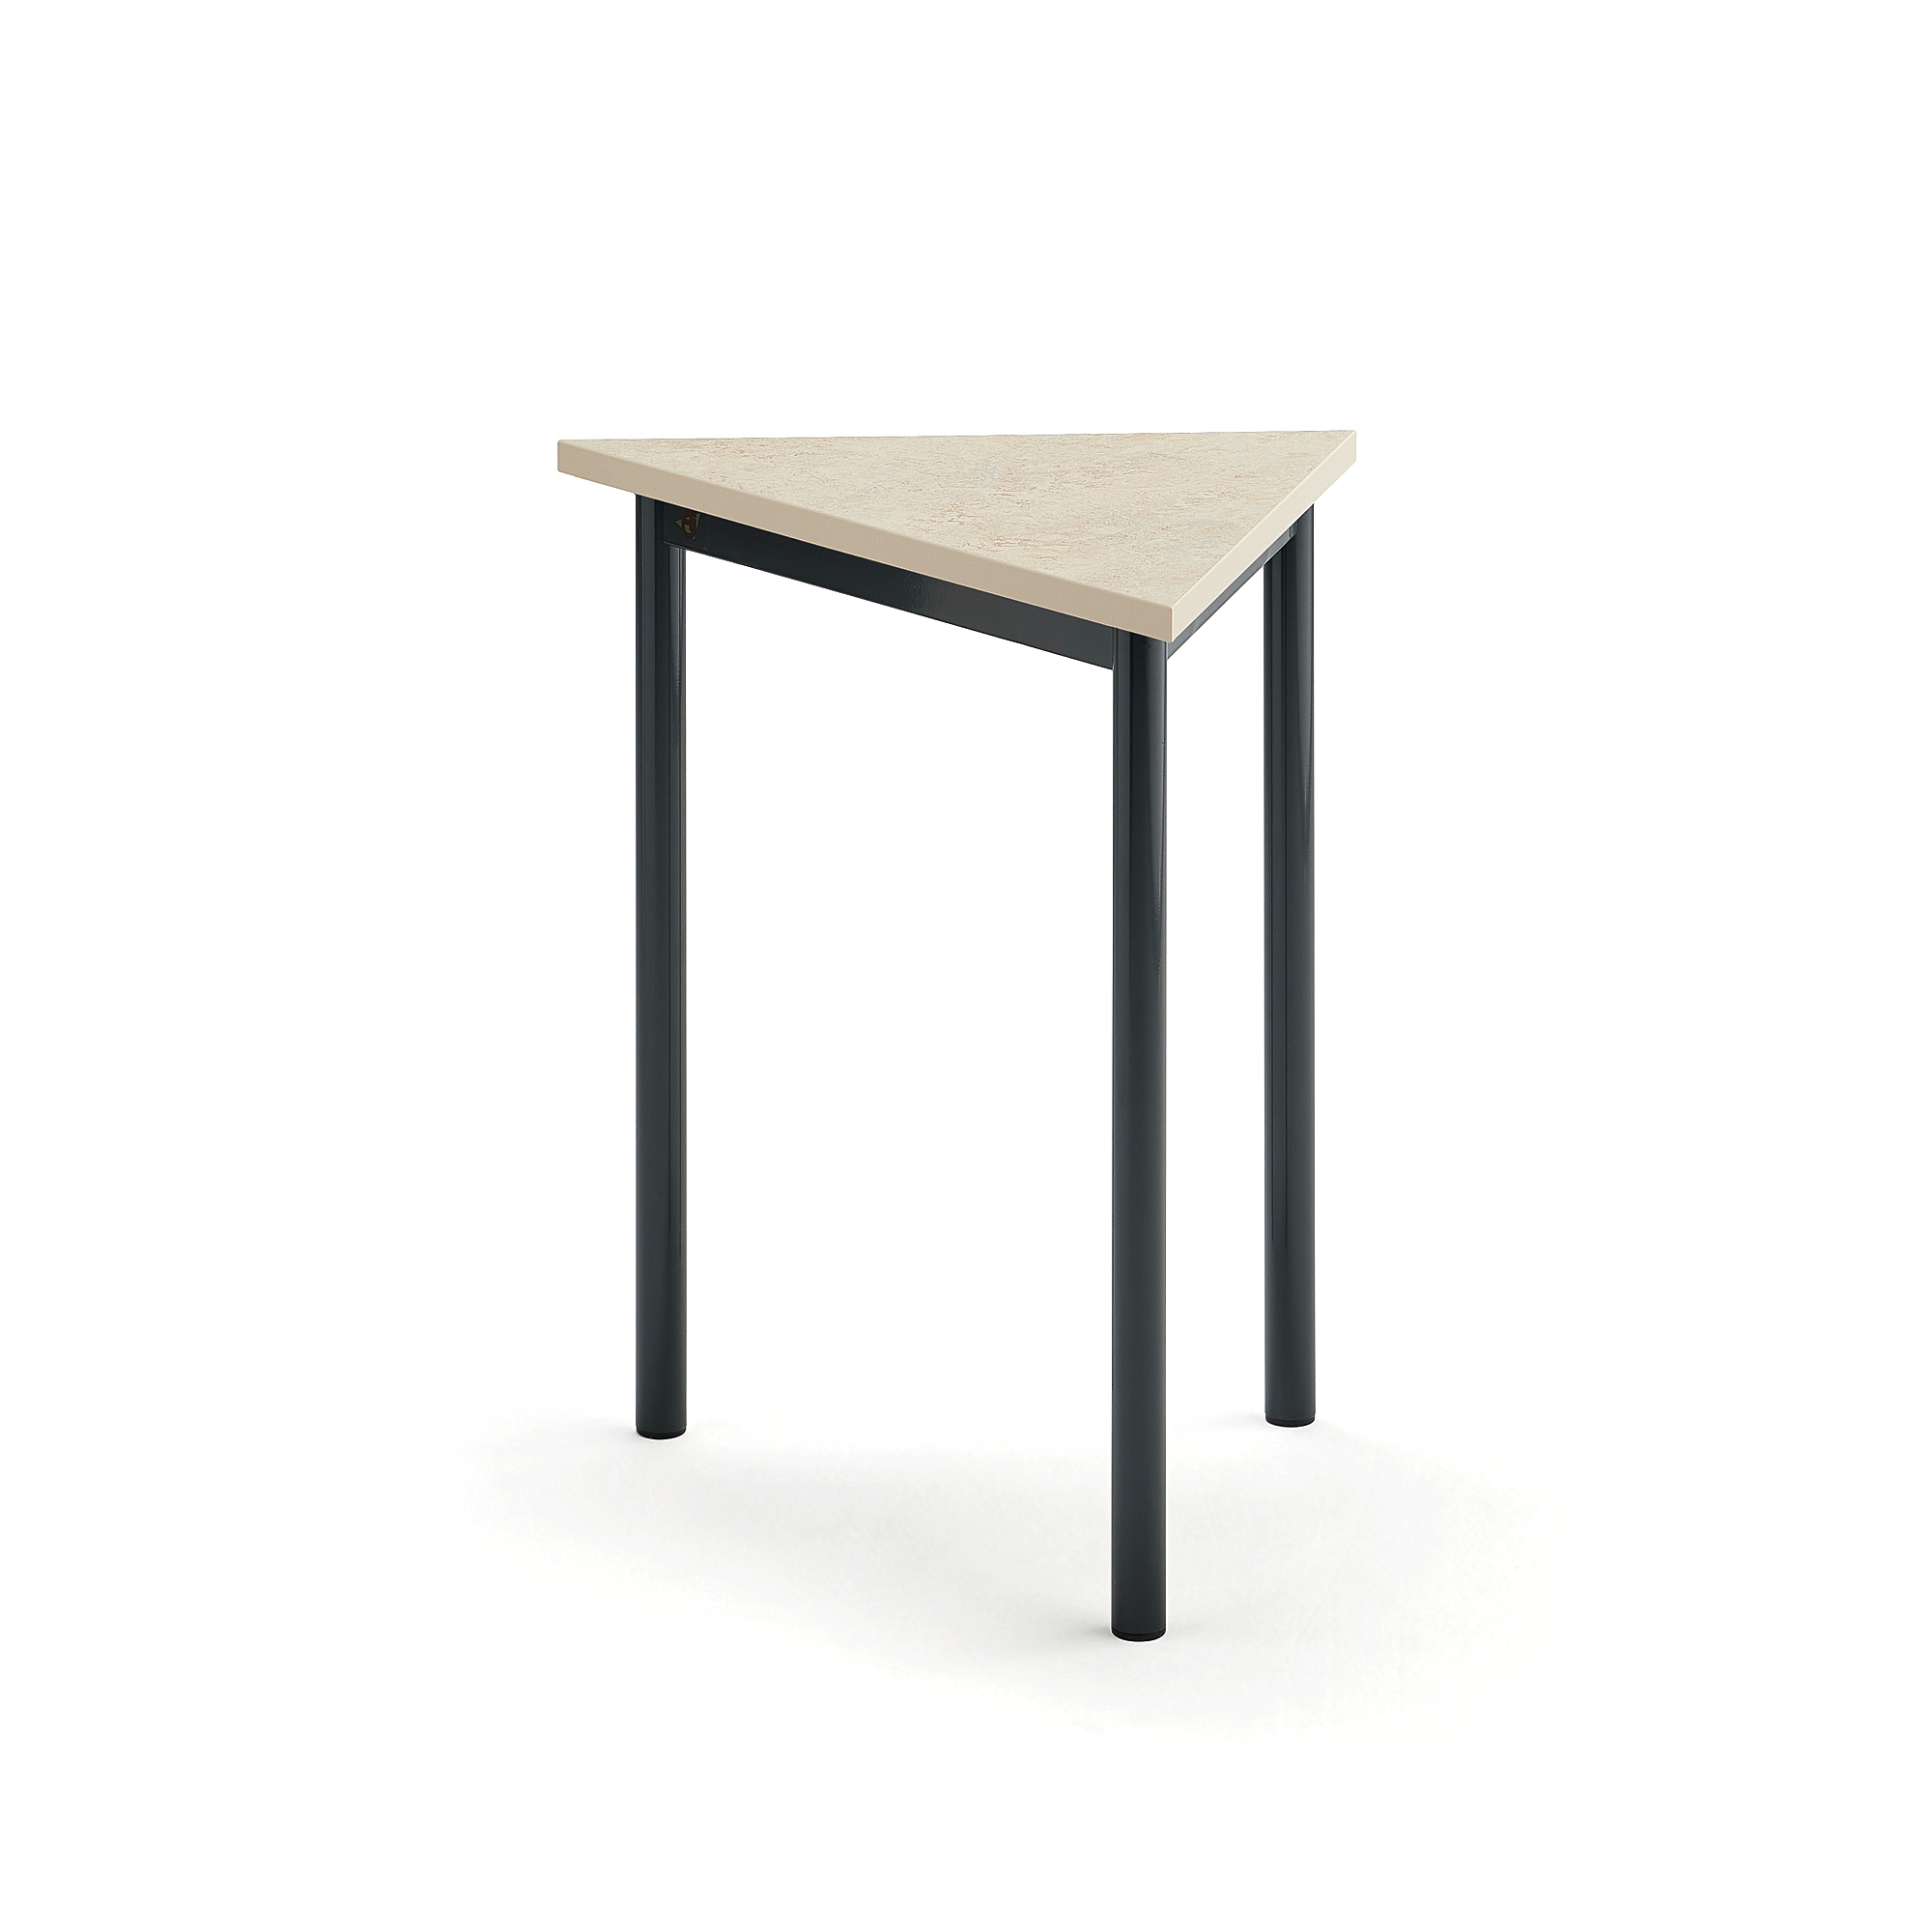 Stôl SONITUS TRIANGEL, 700x600x720 mm, linoleum - béžová, antracit